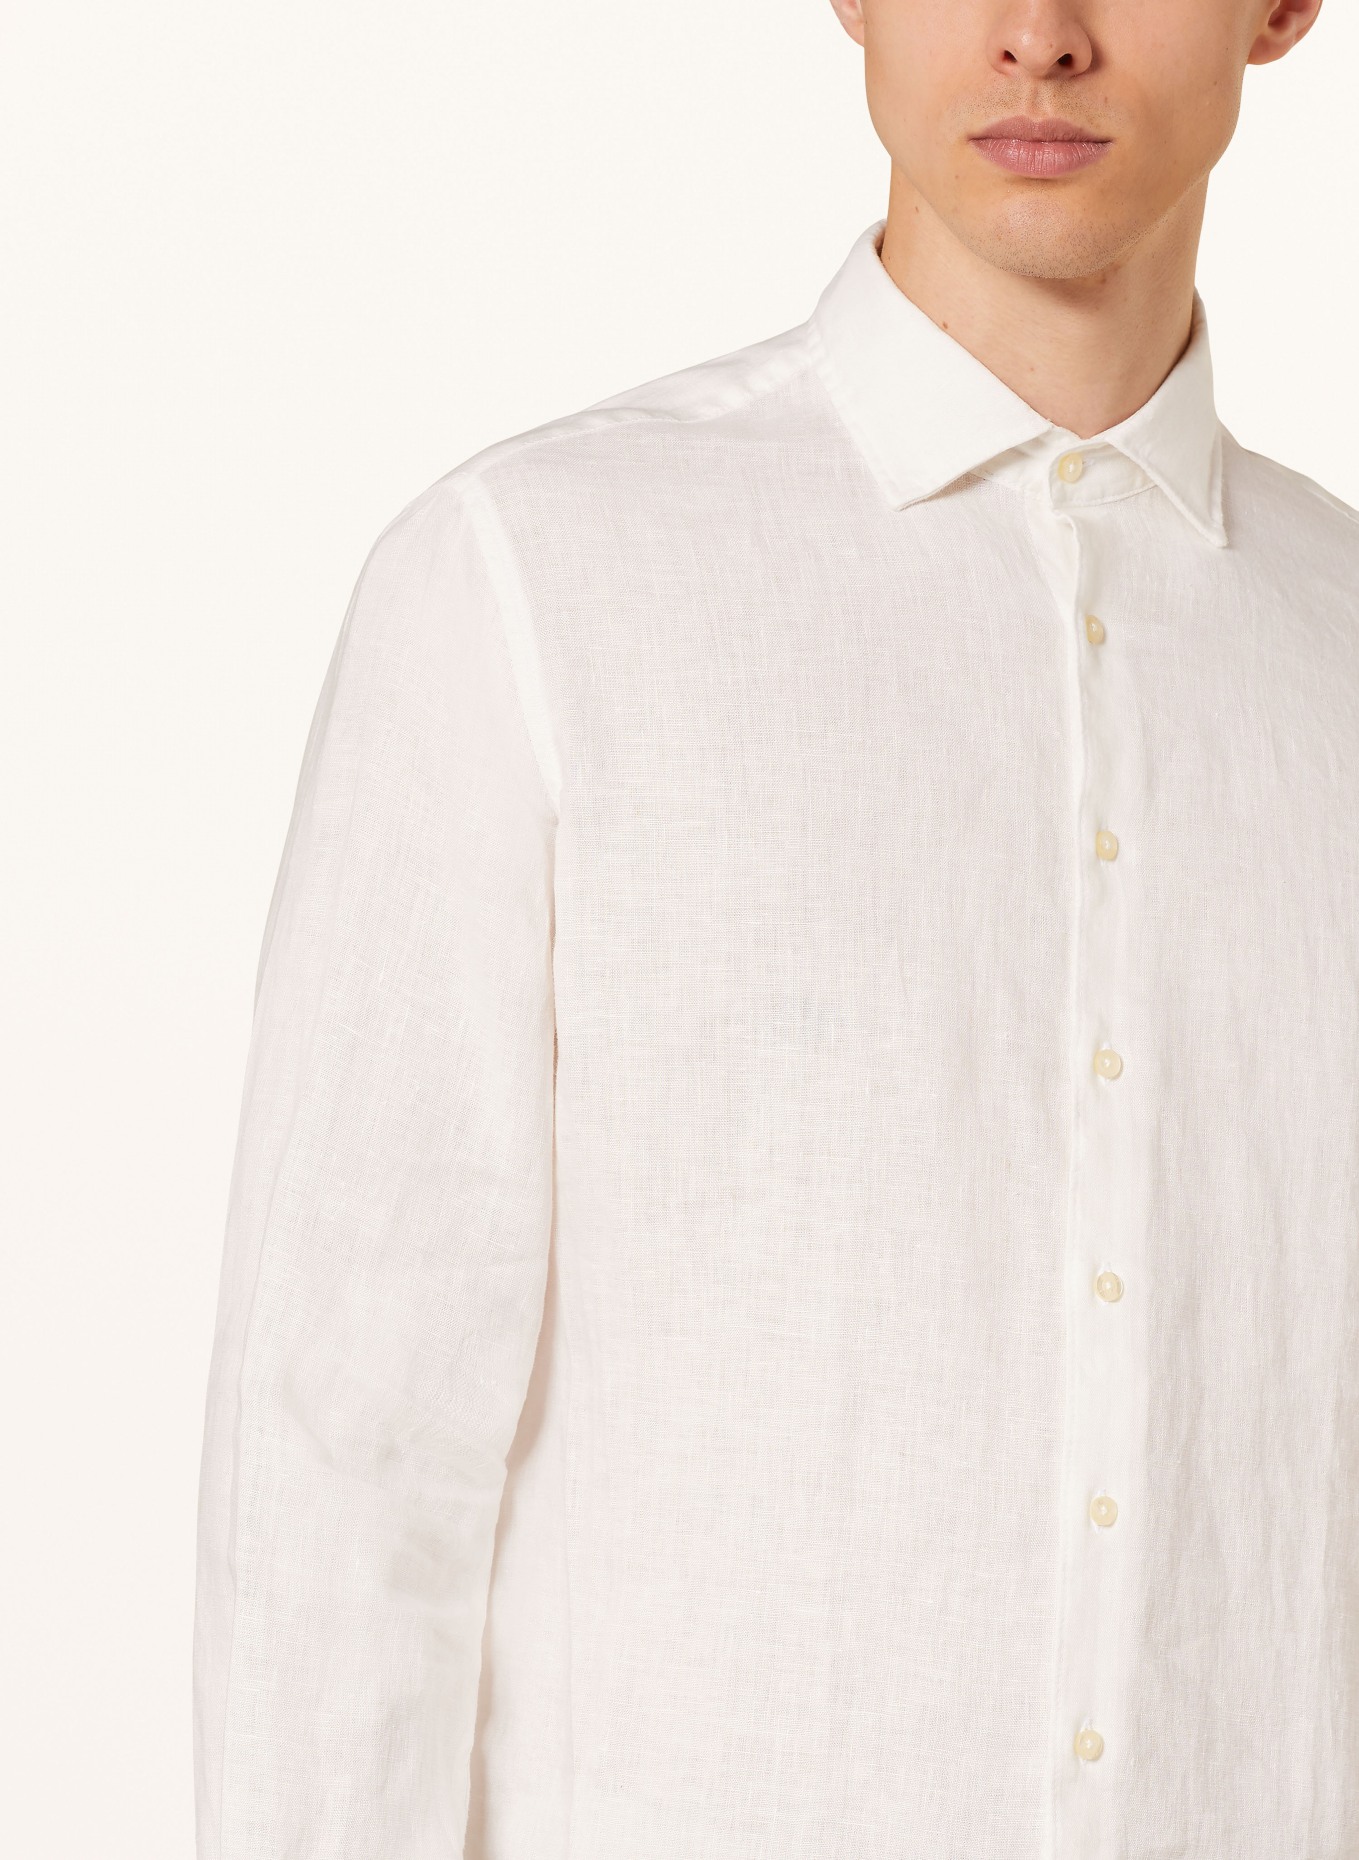 CINQUE Linen shirt CISTEVEN regular fit, Color: WHITE (Image 4)